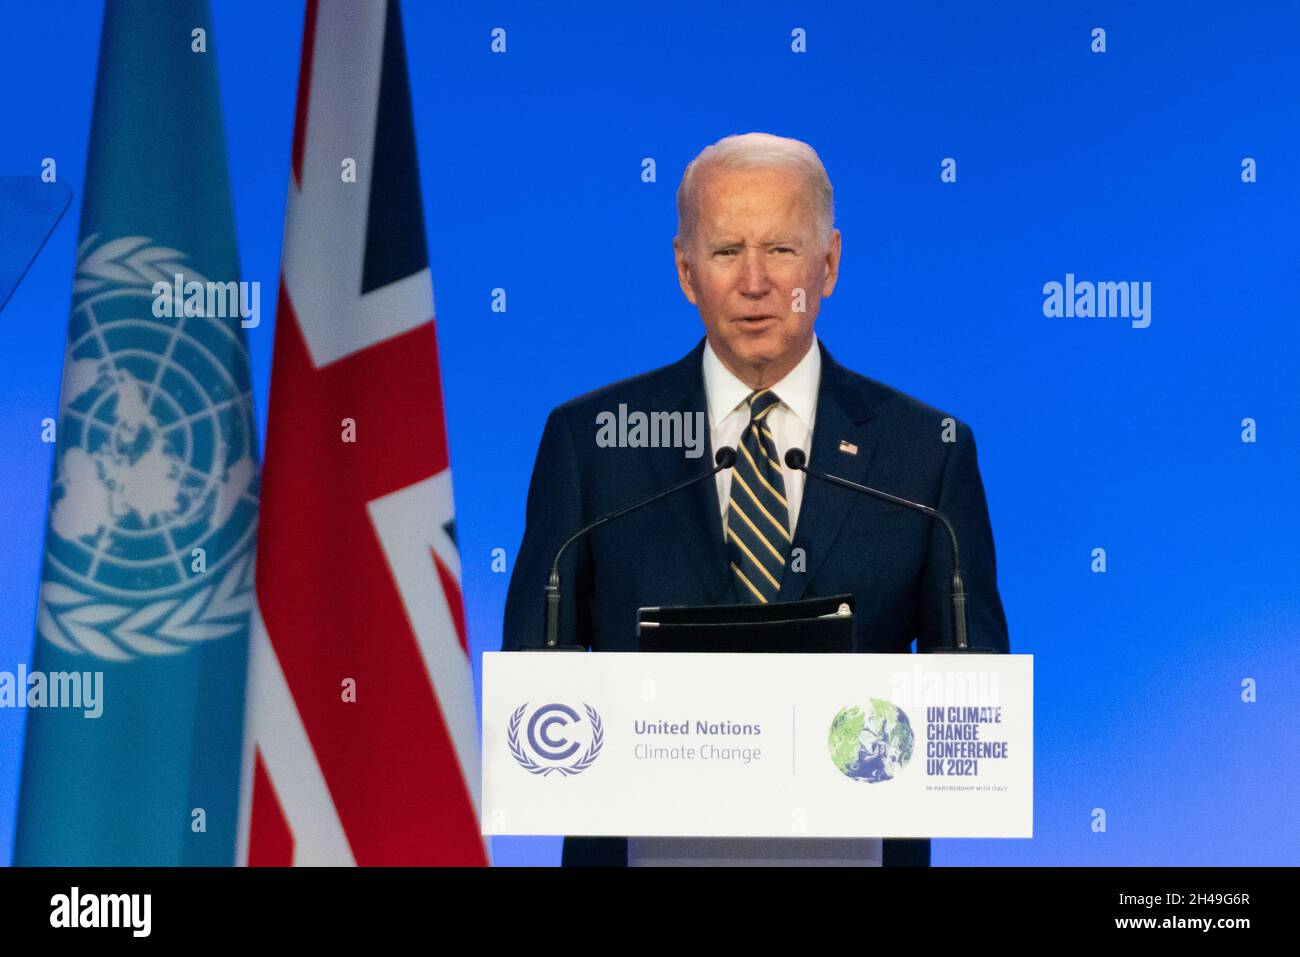 ~Glasgow, Écosse, Royaume-Uni.1er novembre 2021.LE président AMÉRICAIN Joe Biden prononce un discours lors de la conférence COP26 des Nations Unies sur le changement climatique à Glasgow.Iain Masterton/Alay Live News. Banque D'Images